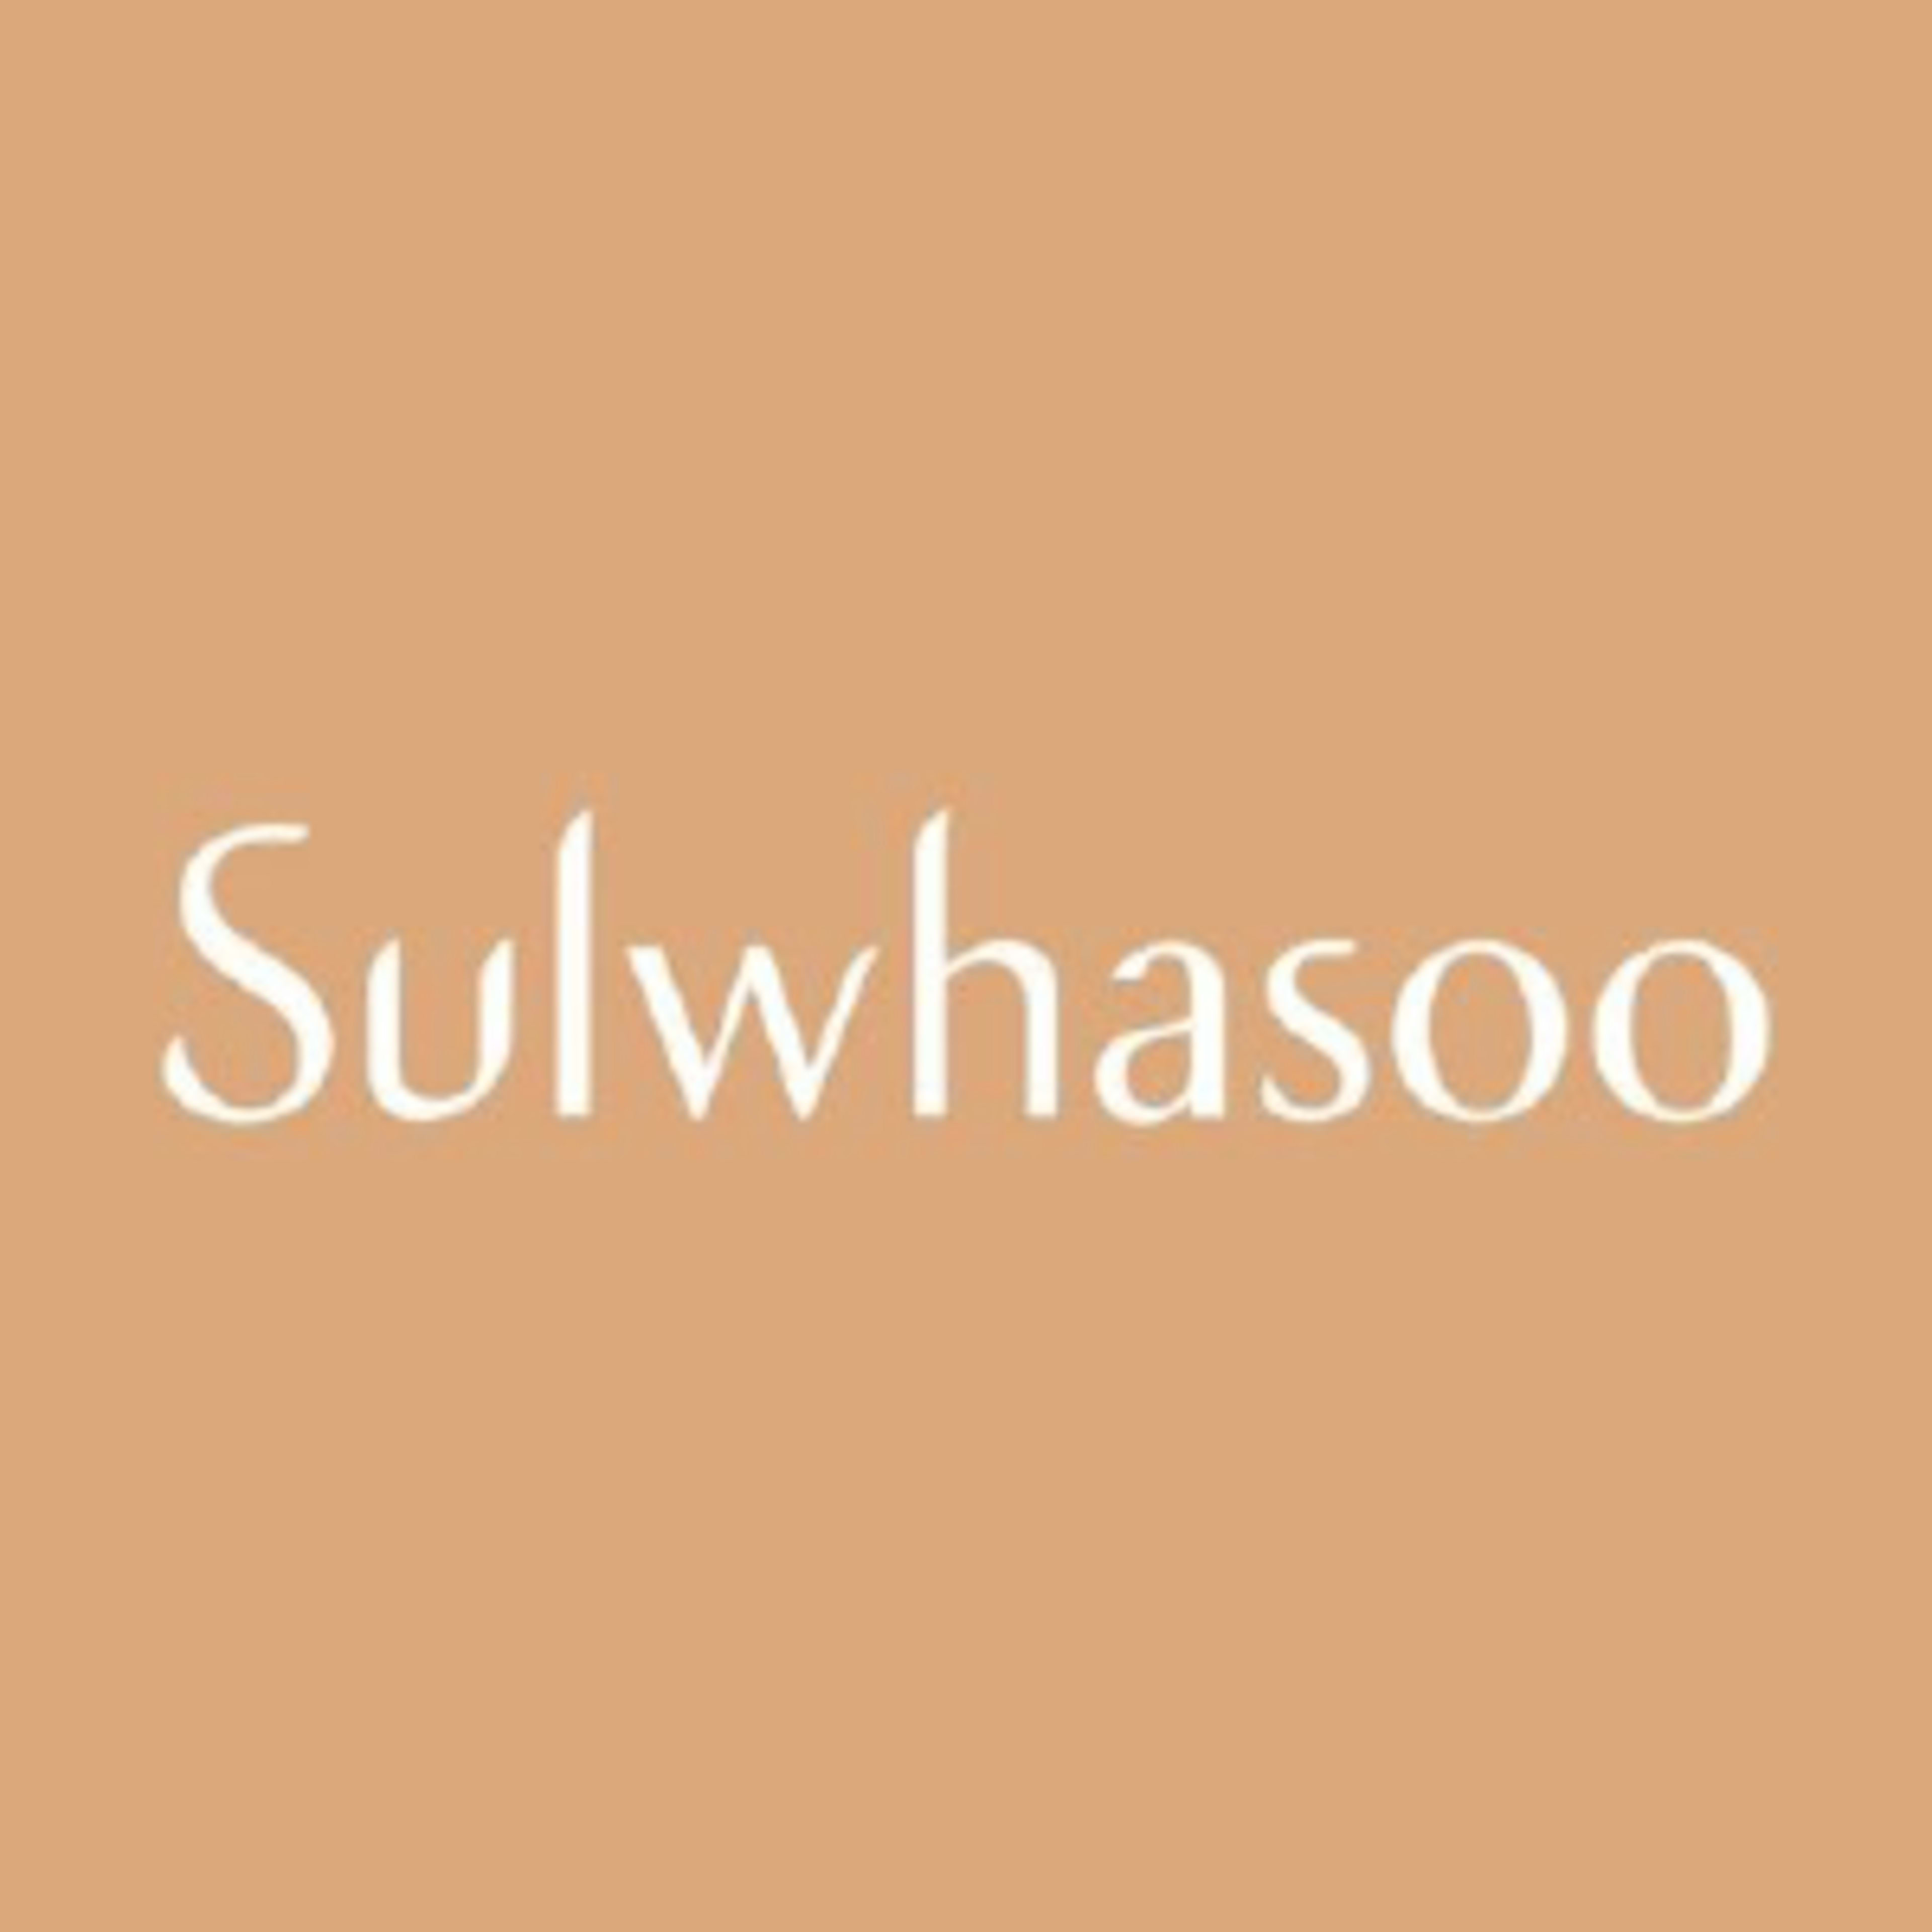 Sulwhasoo Code